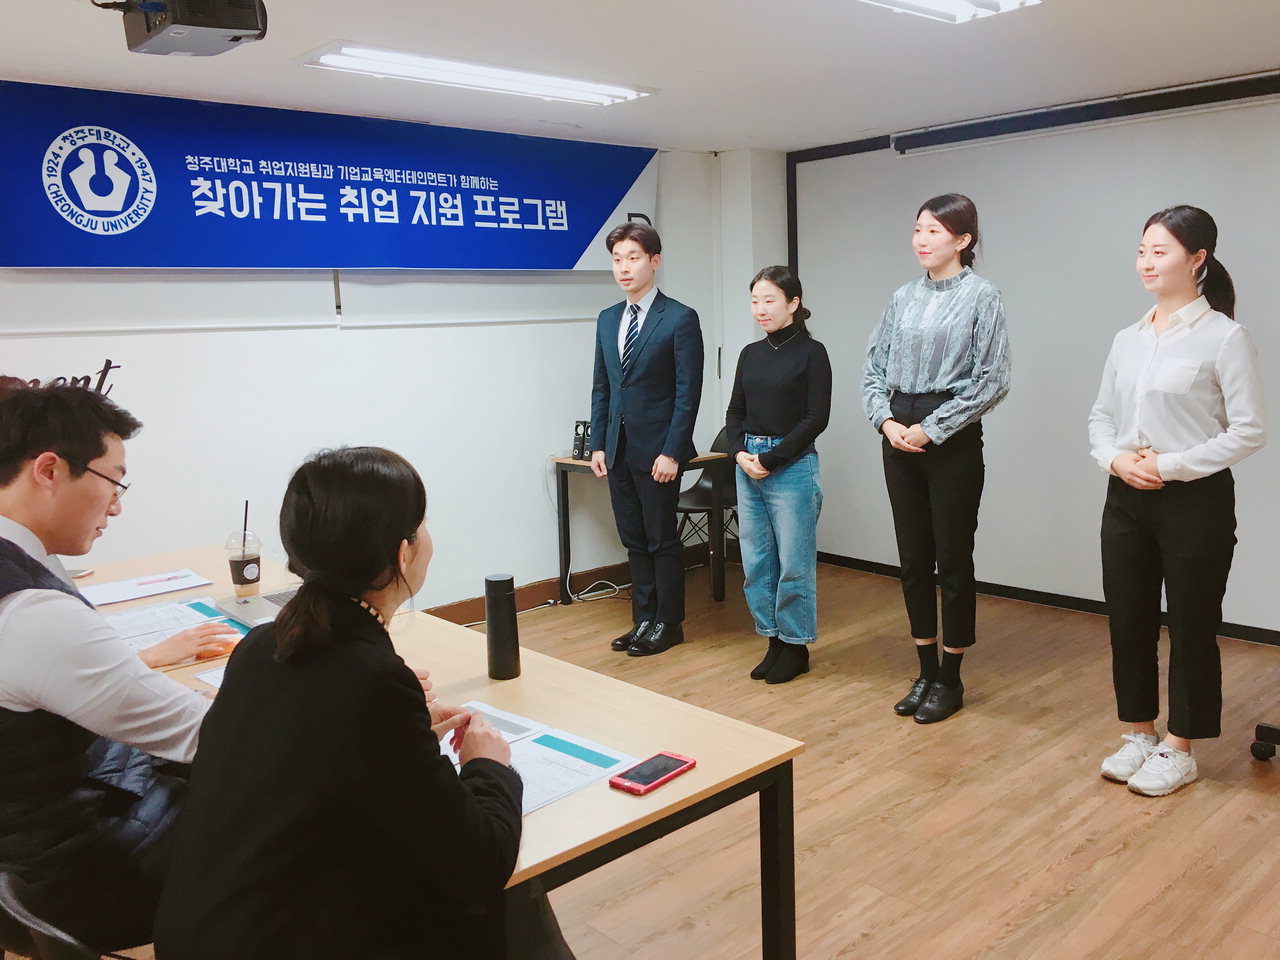 청주대가 지난 18일 서울시 강남구에서 진행한 '찾아가는 취업지원' 프로그램에 참가한 학생들이 1:1 맞춤 취업 지원을 받고 있다. / 청주대학교 제공